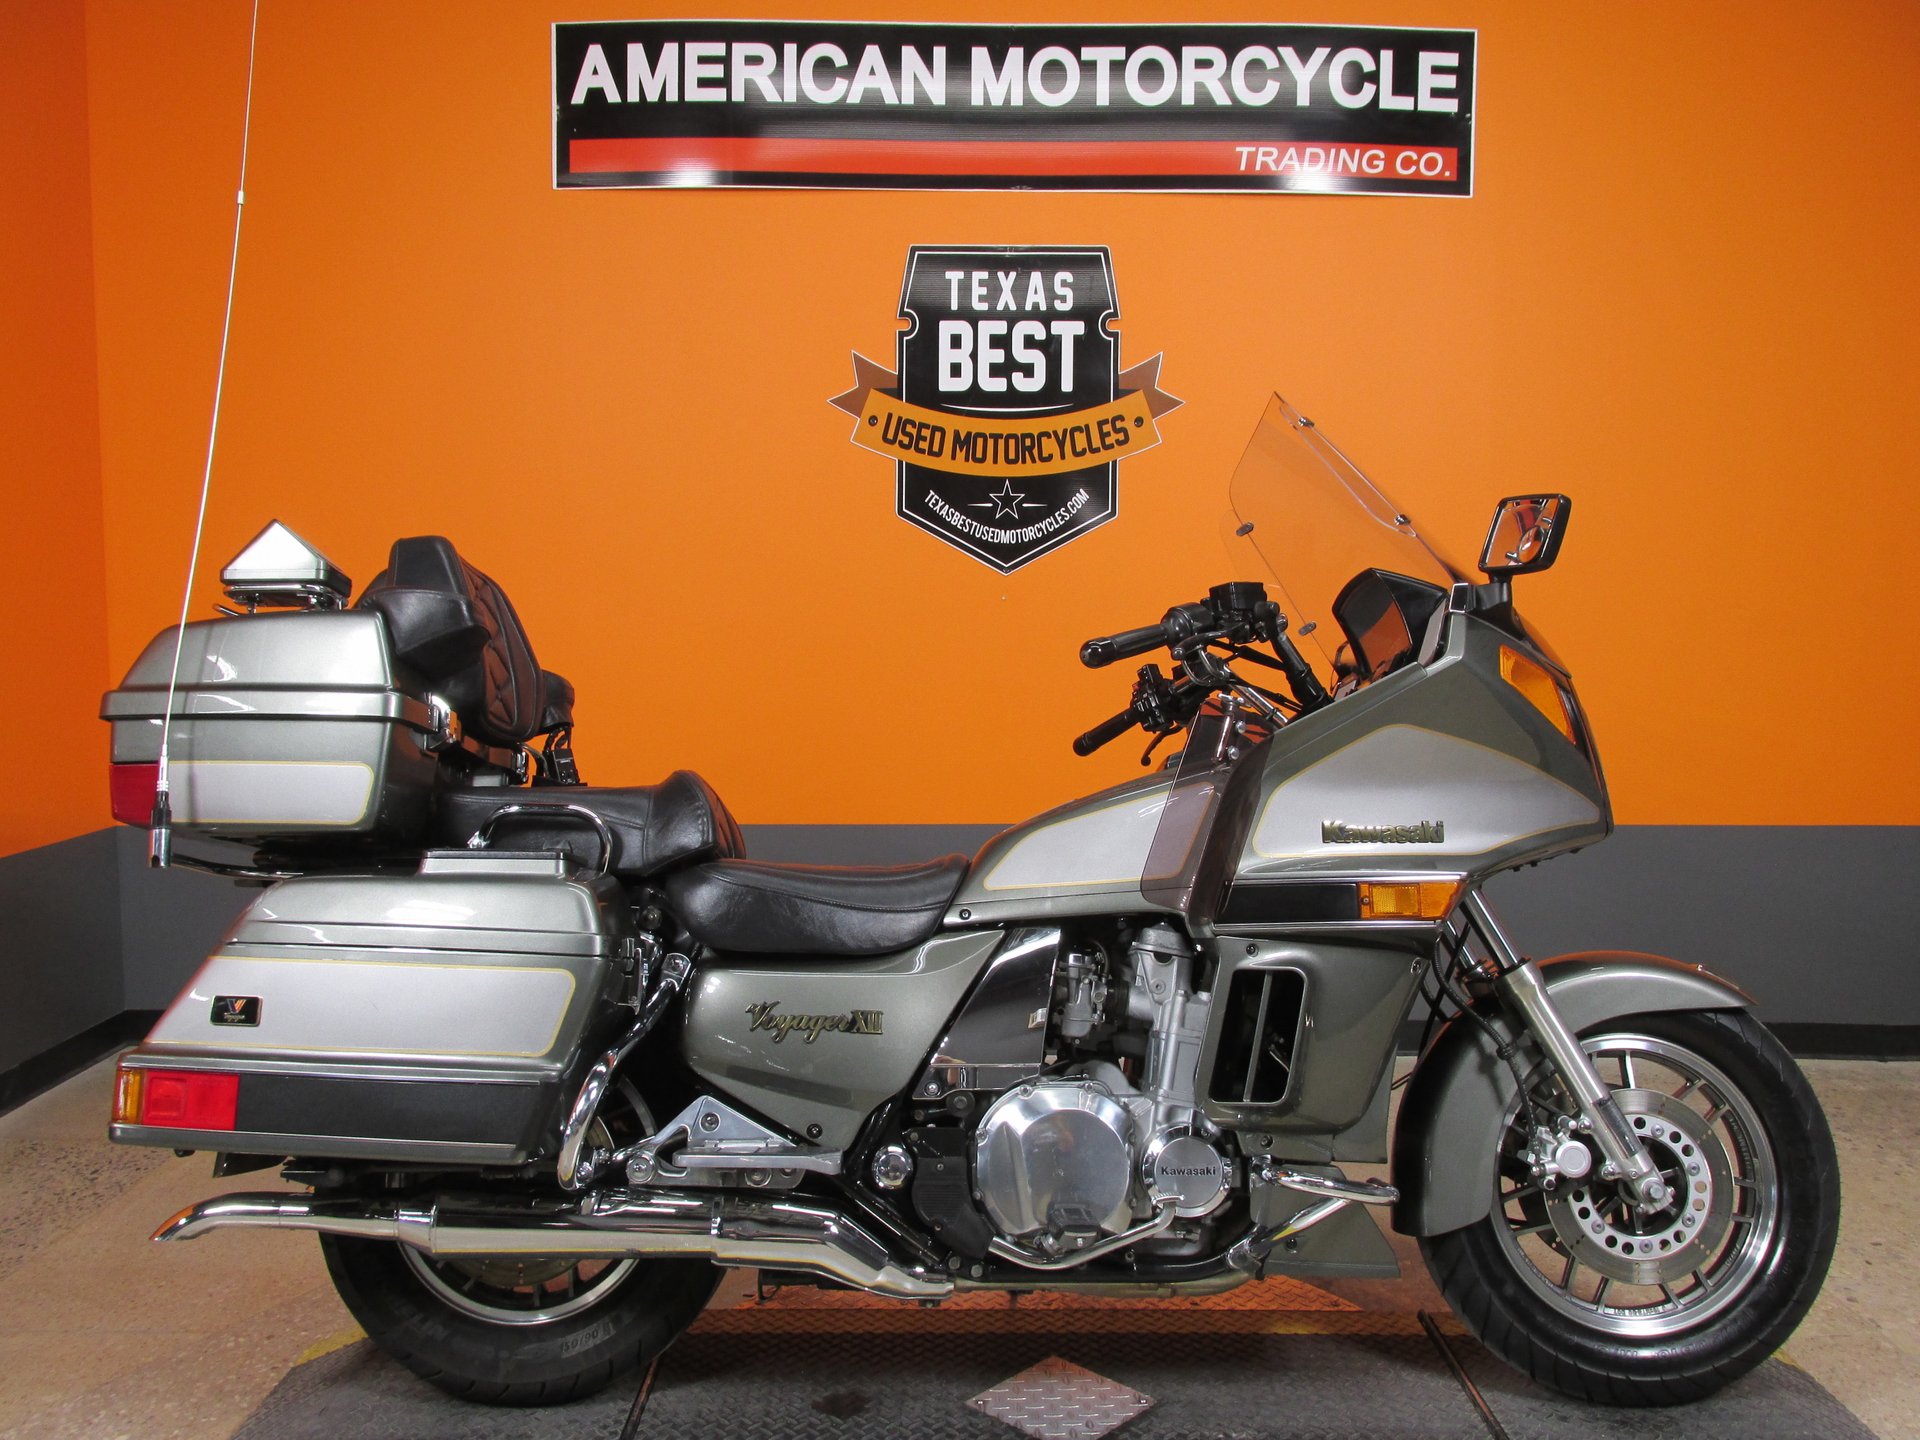 2003 Kawasaki | American Motorcycle Trading Company - Used Harley Davidson Motorcycles